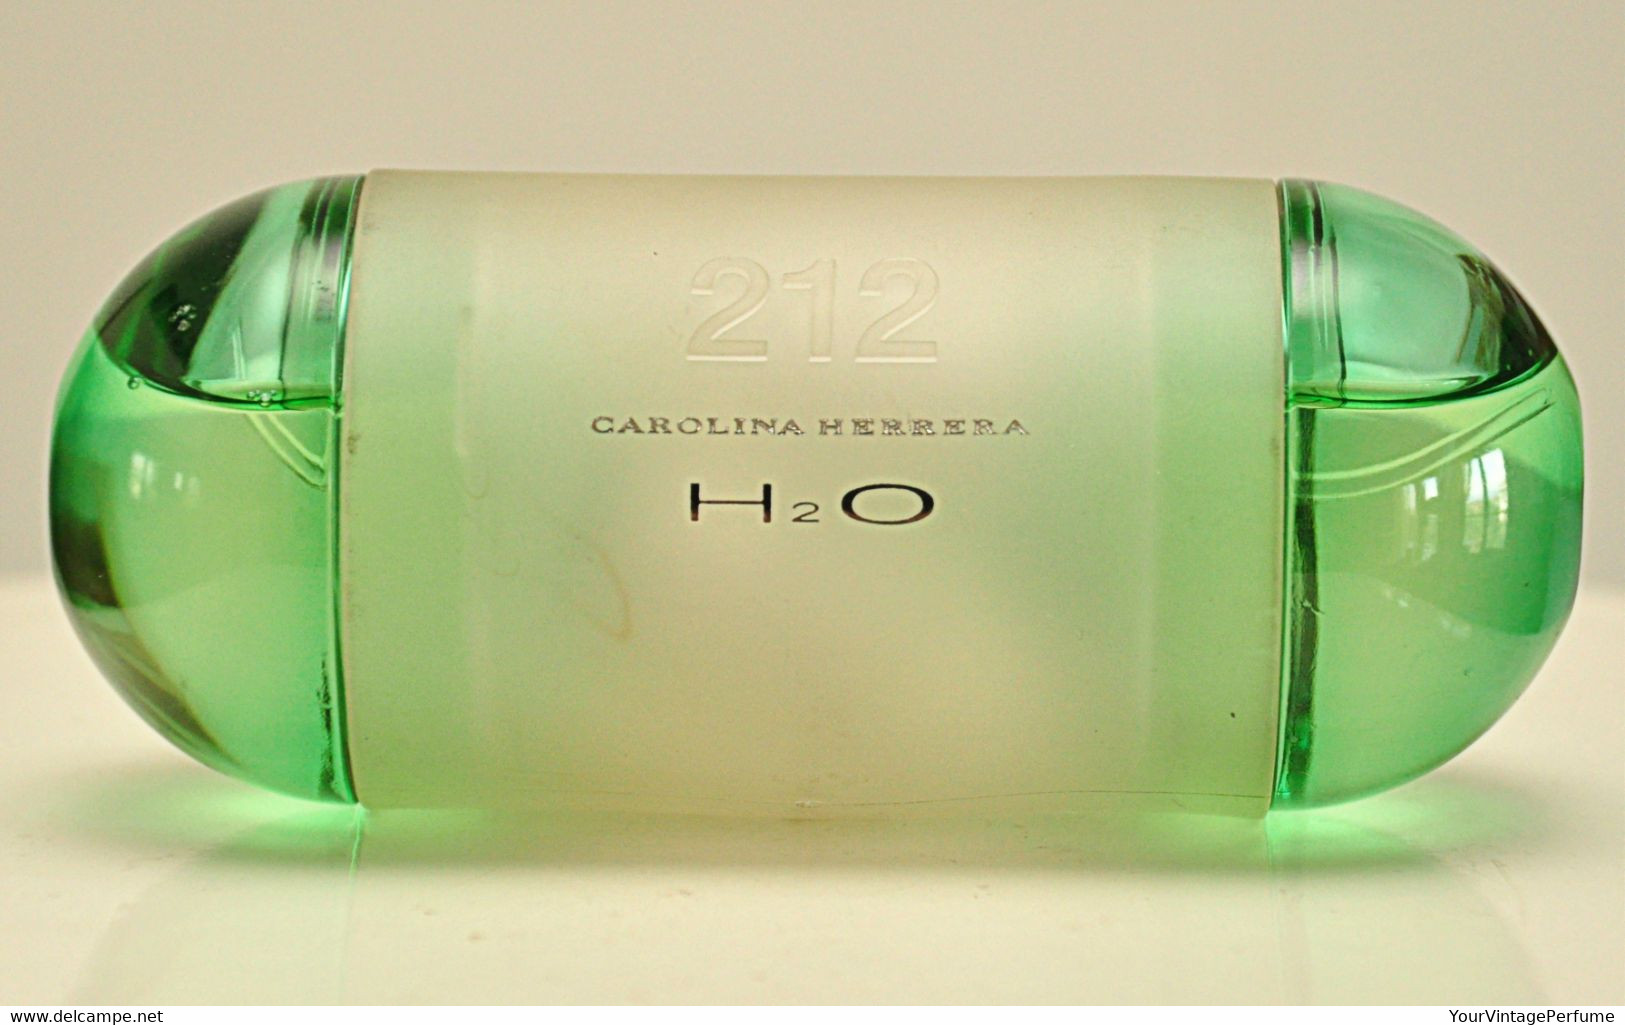 Carolina Herrera 212 H2O Eau De Toilette Edt 60ml 2 Fl. Oz. Spray Perfume For Woman Rare Vintage 2003 - Uomo